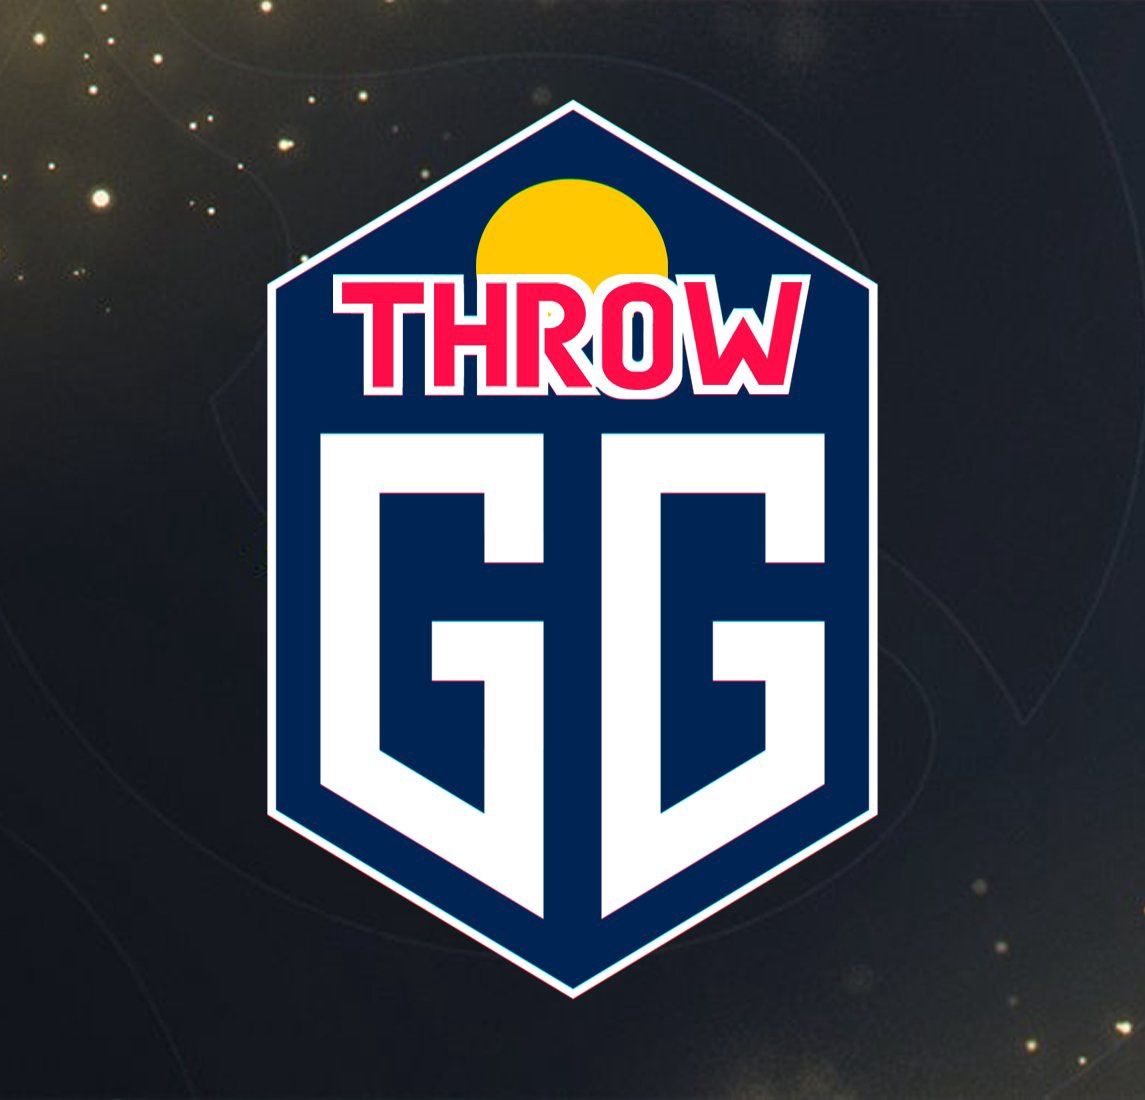 Throw GG